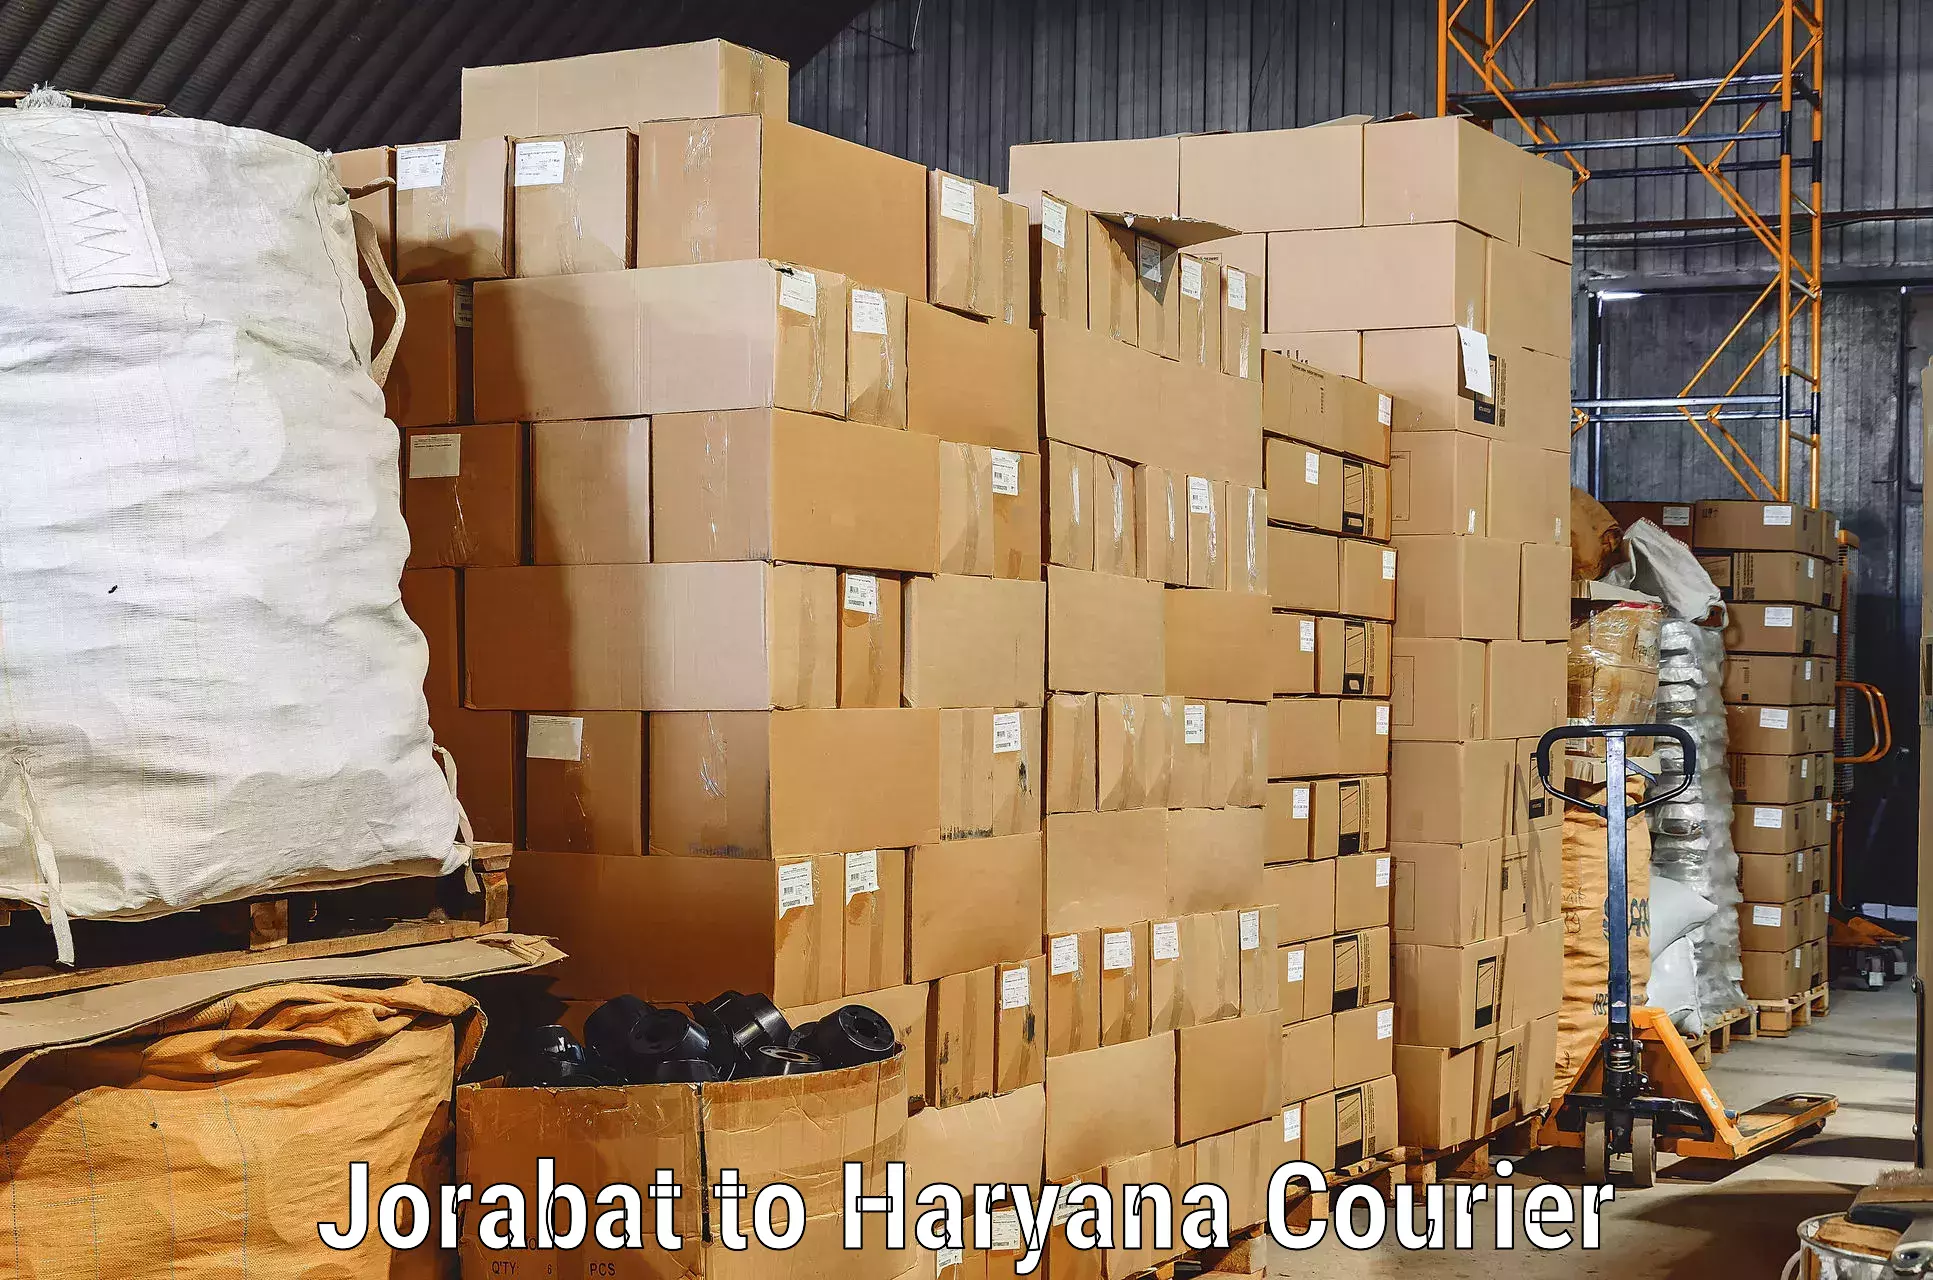 Professional movers and packers Jorabat to Bilaspur Haryana